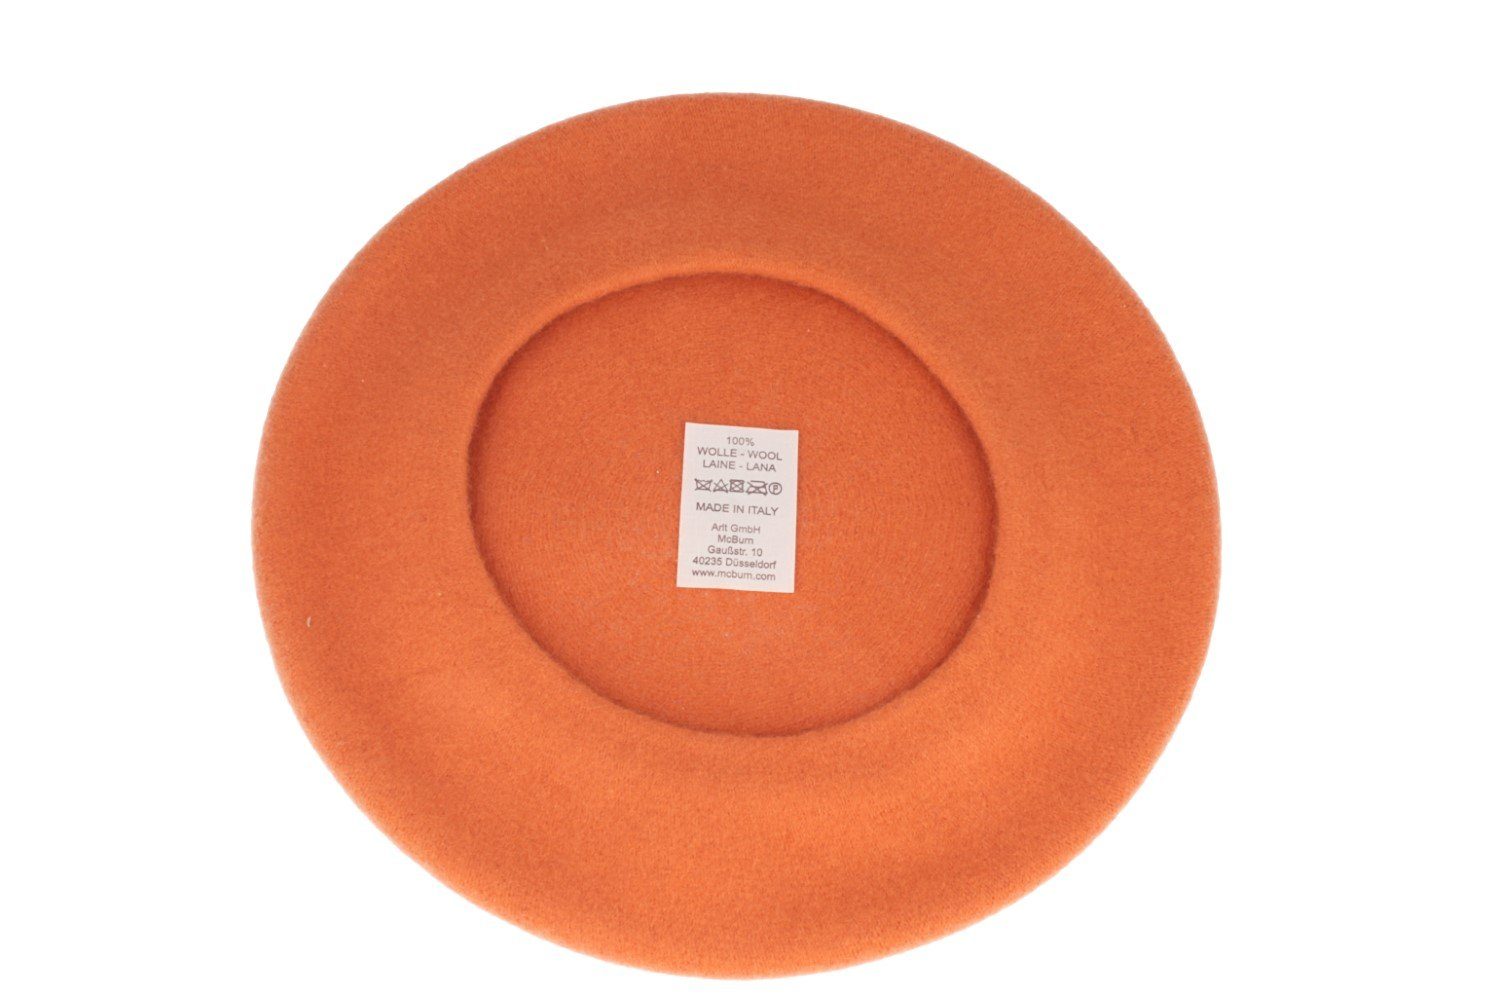 Große Baskenmütze aus McBurn angenehm weich 188 Wolle orange 100% Baskenmütze